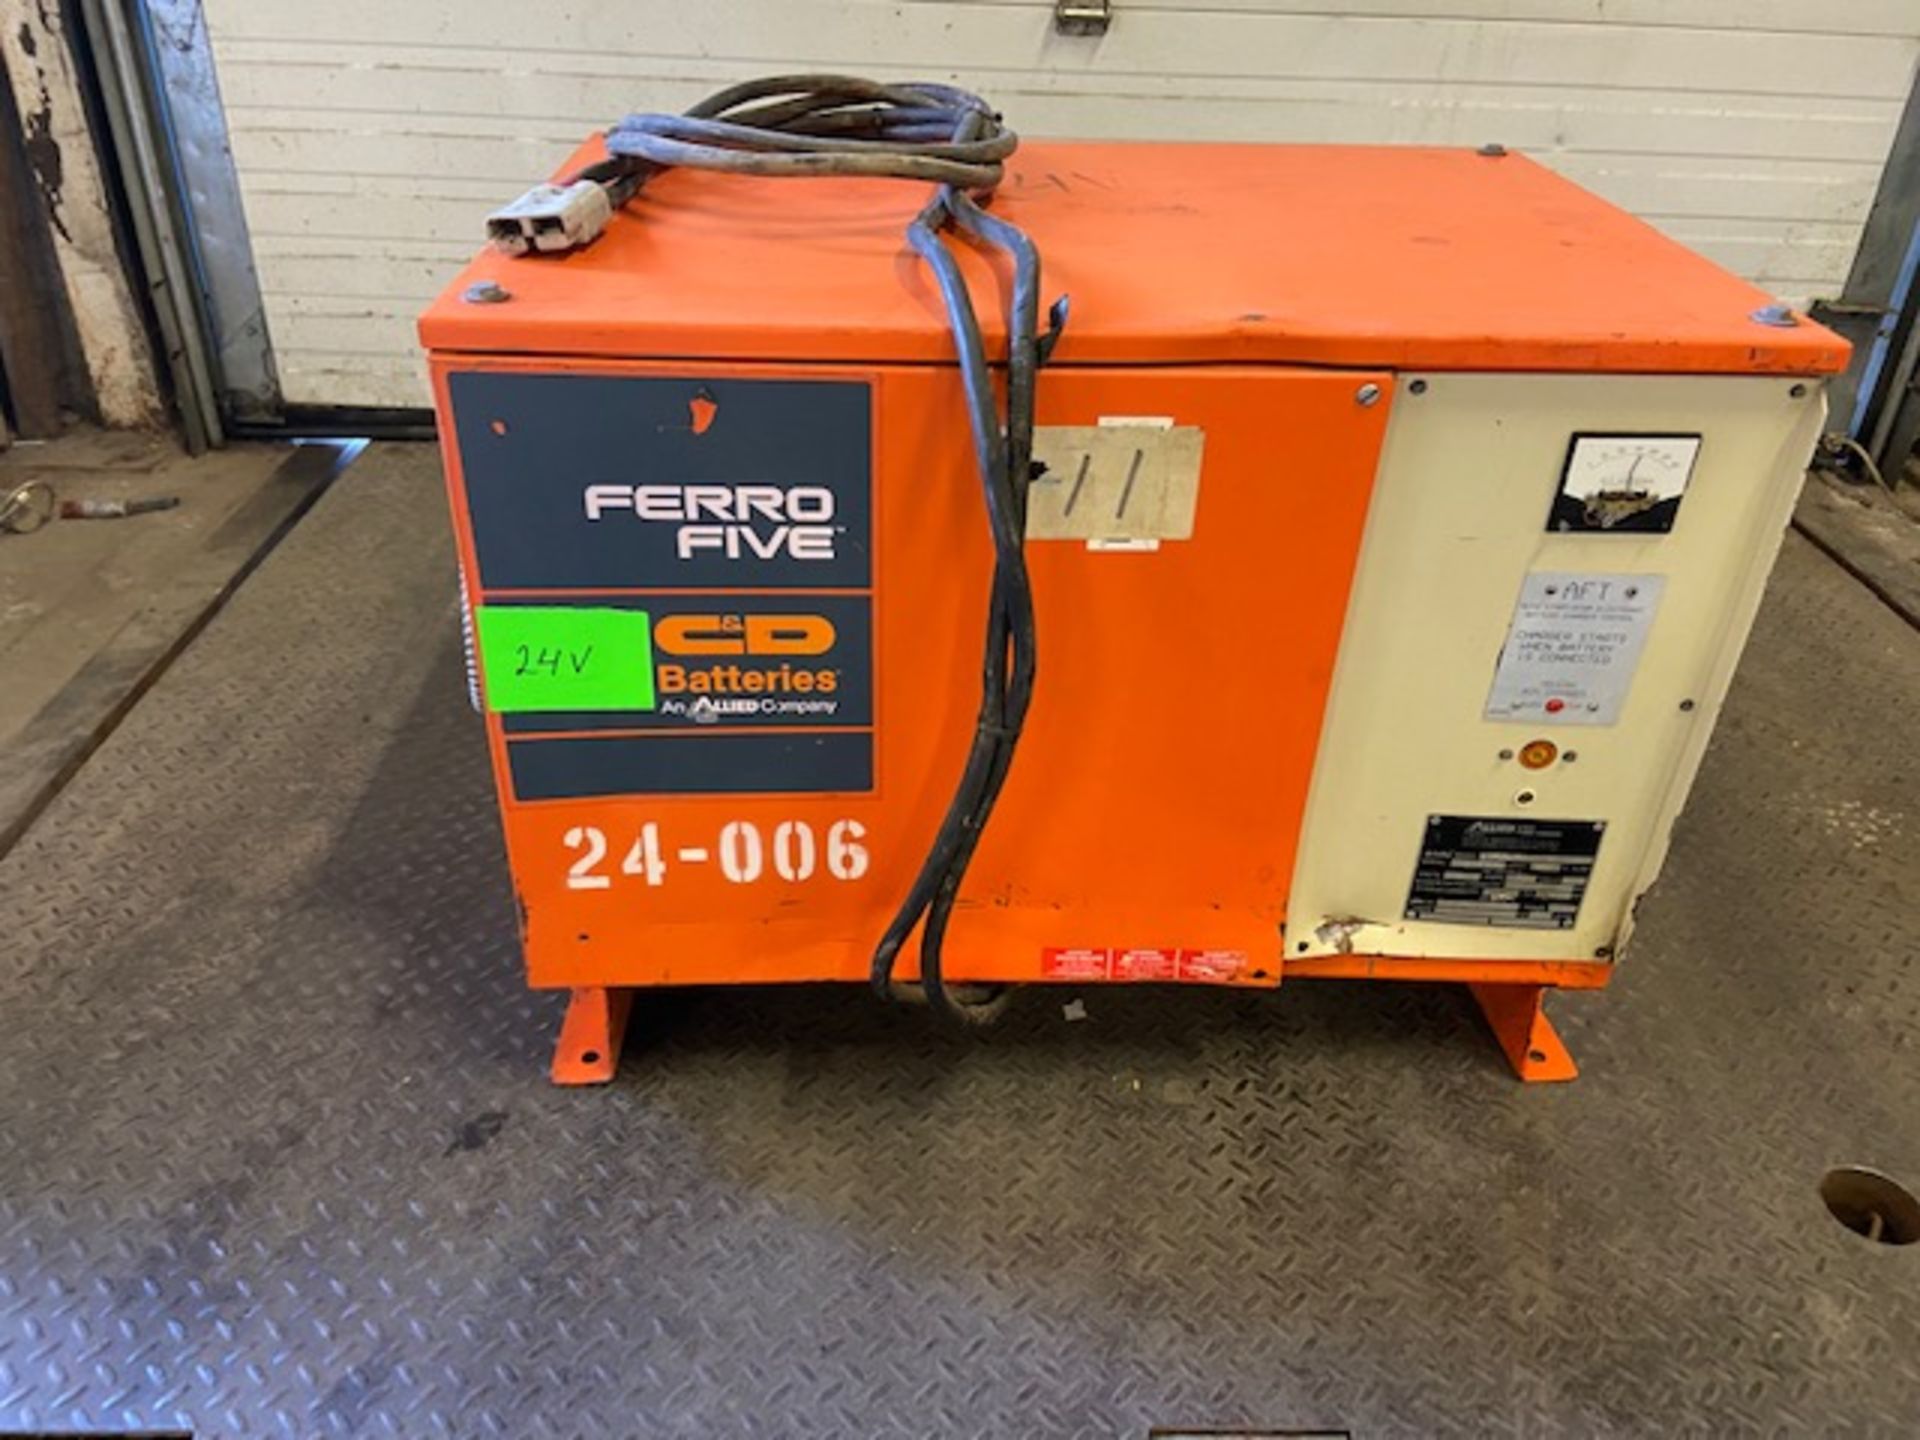 Ferro Five 24V battery charger model FR12L850